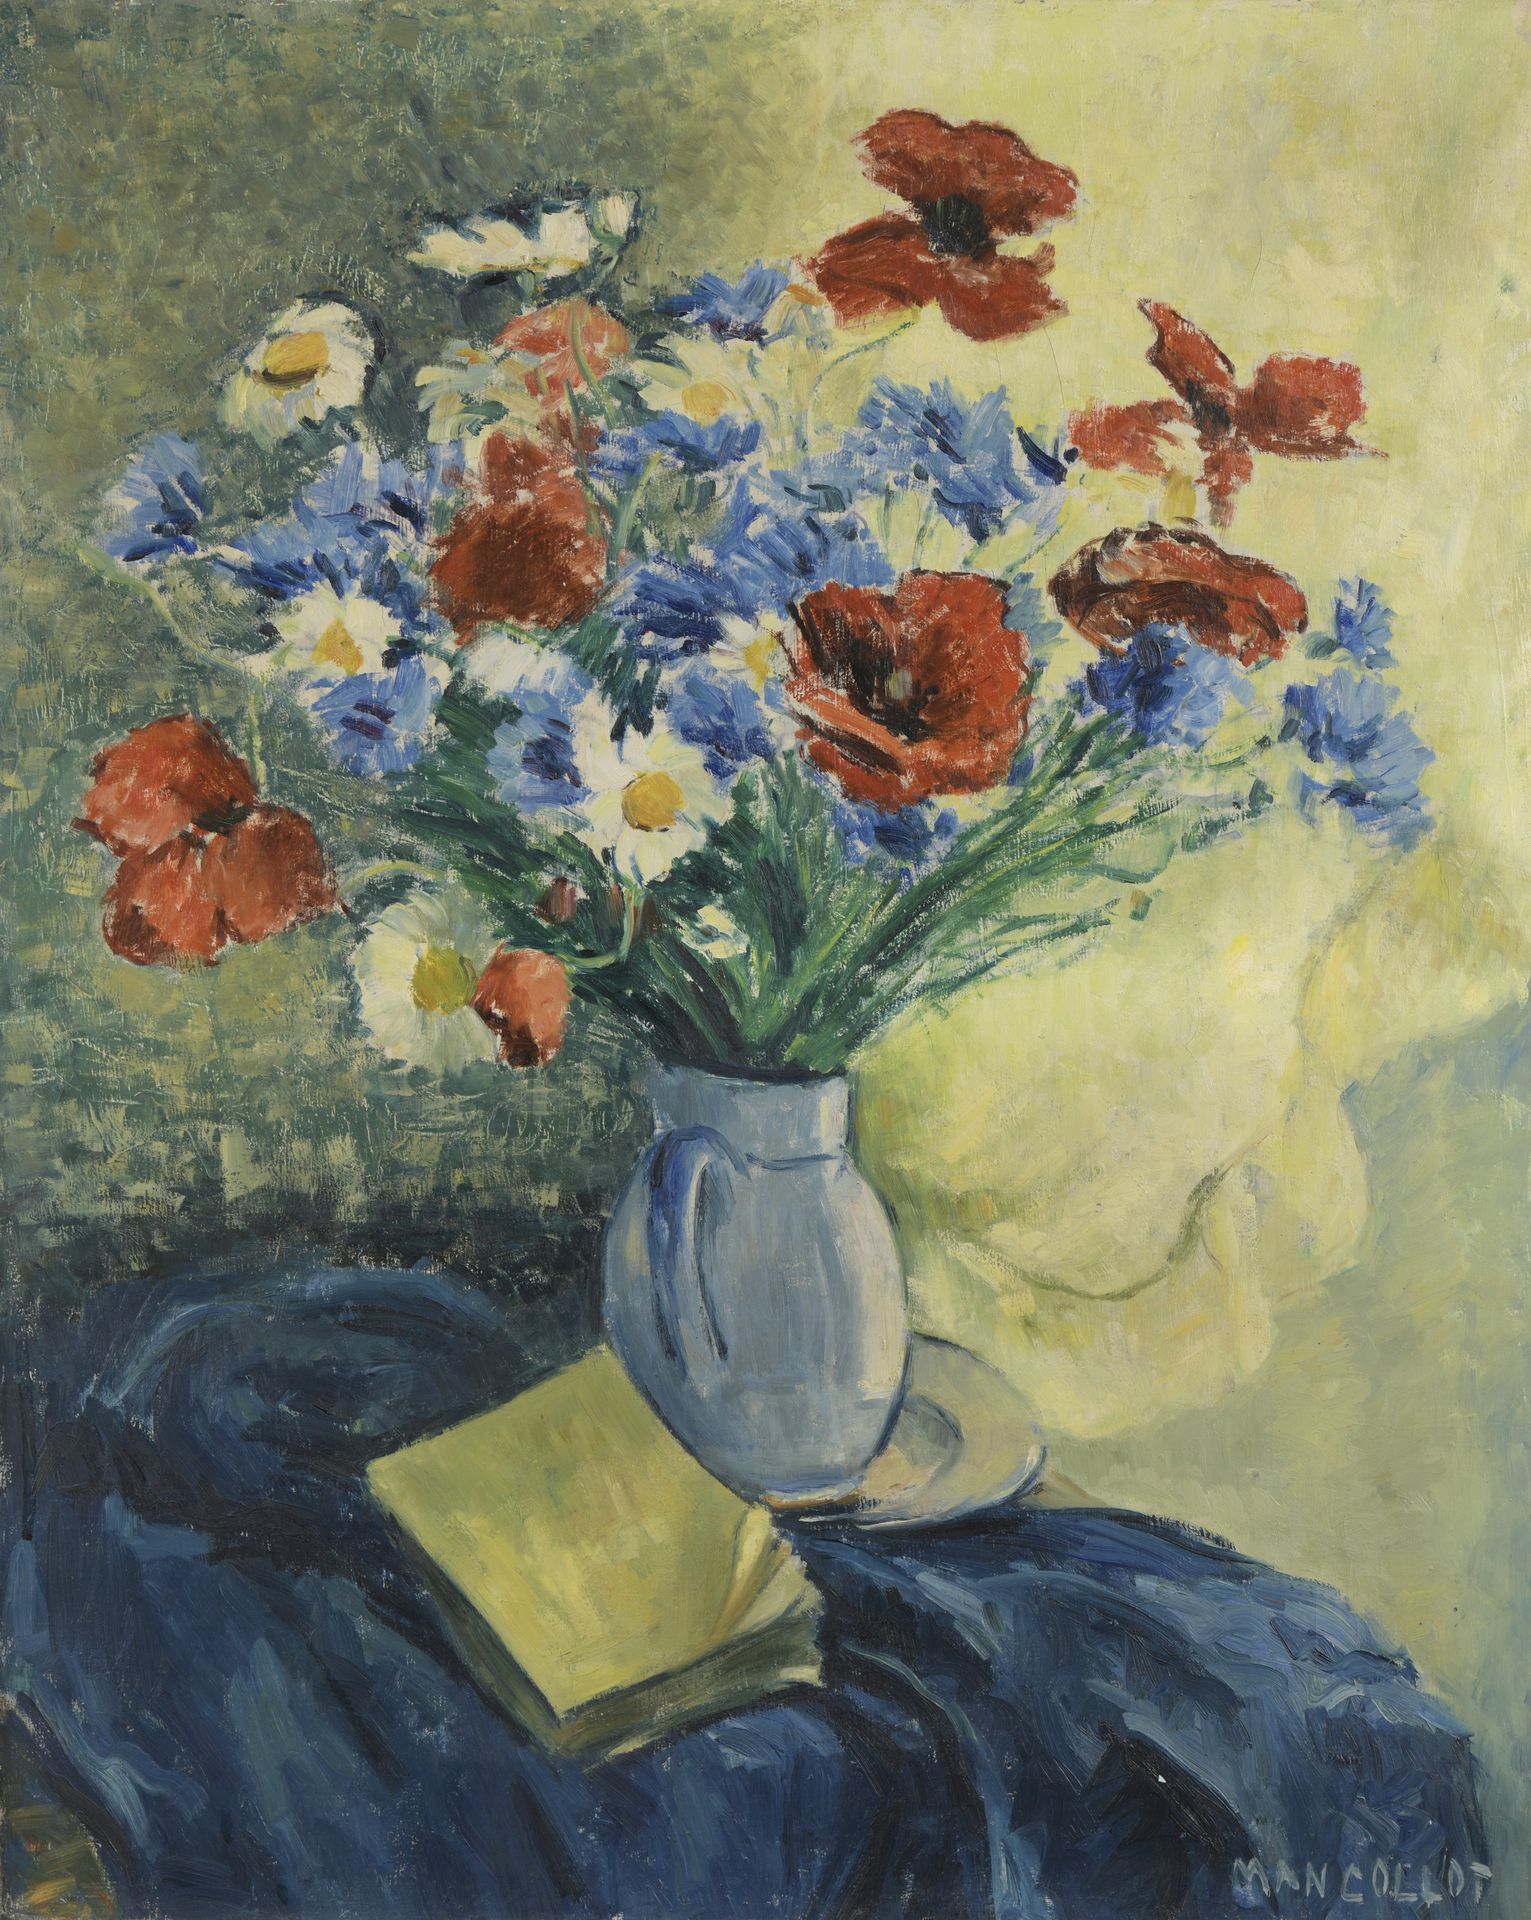 Null 芒克洛特(1903-1962)

一束花的静物

布面油画。

右下方有签名。

背面有一个沙龙标签。

85 x 70厘米